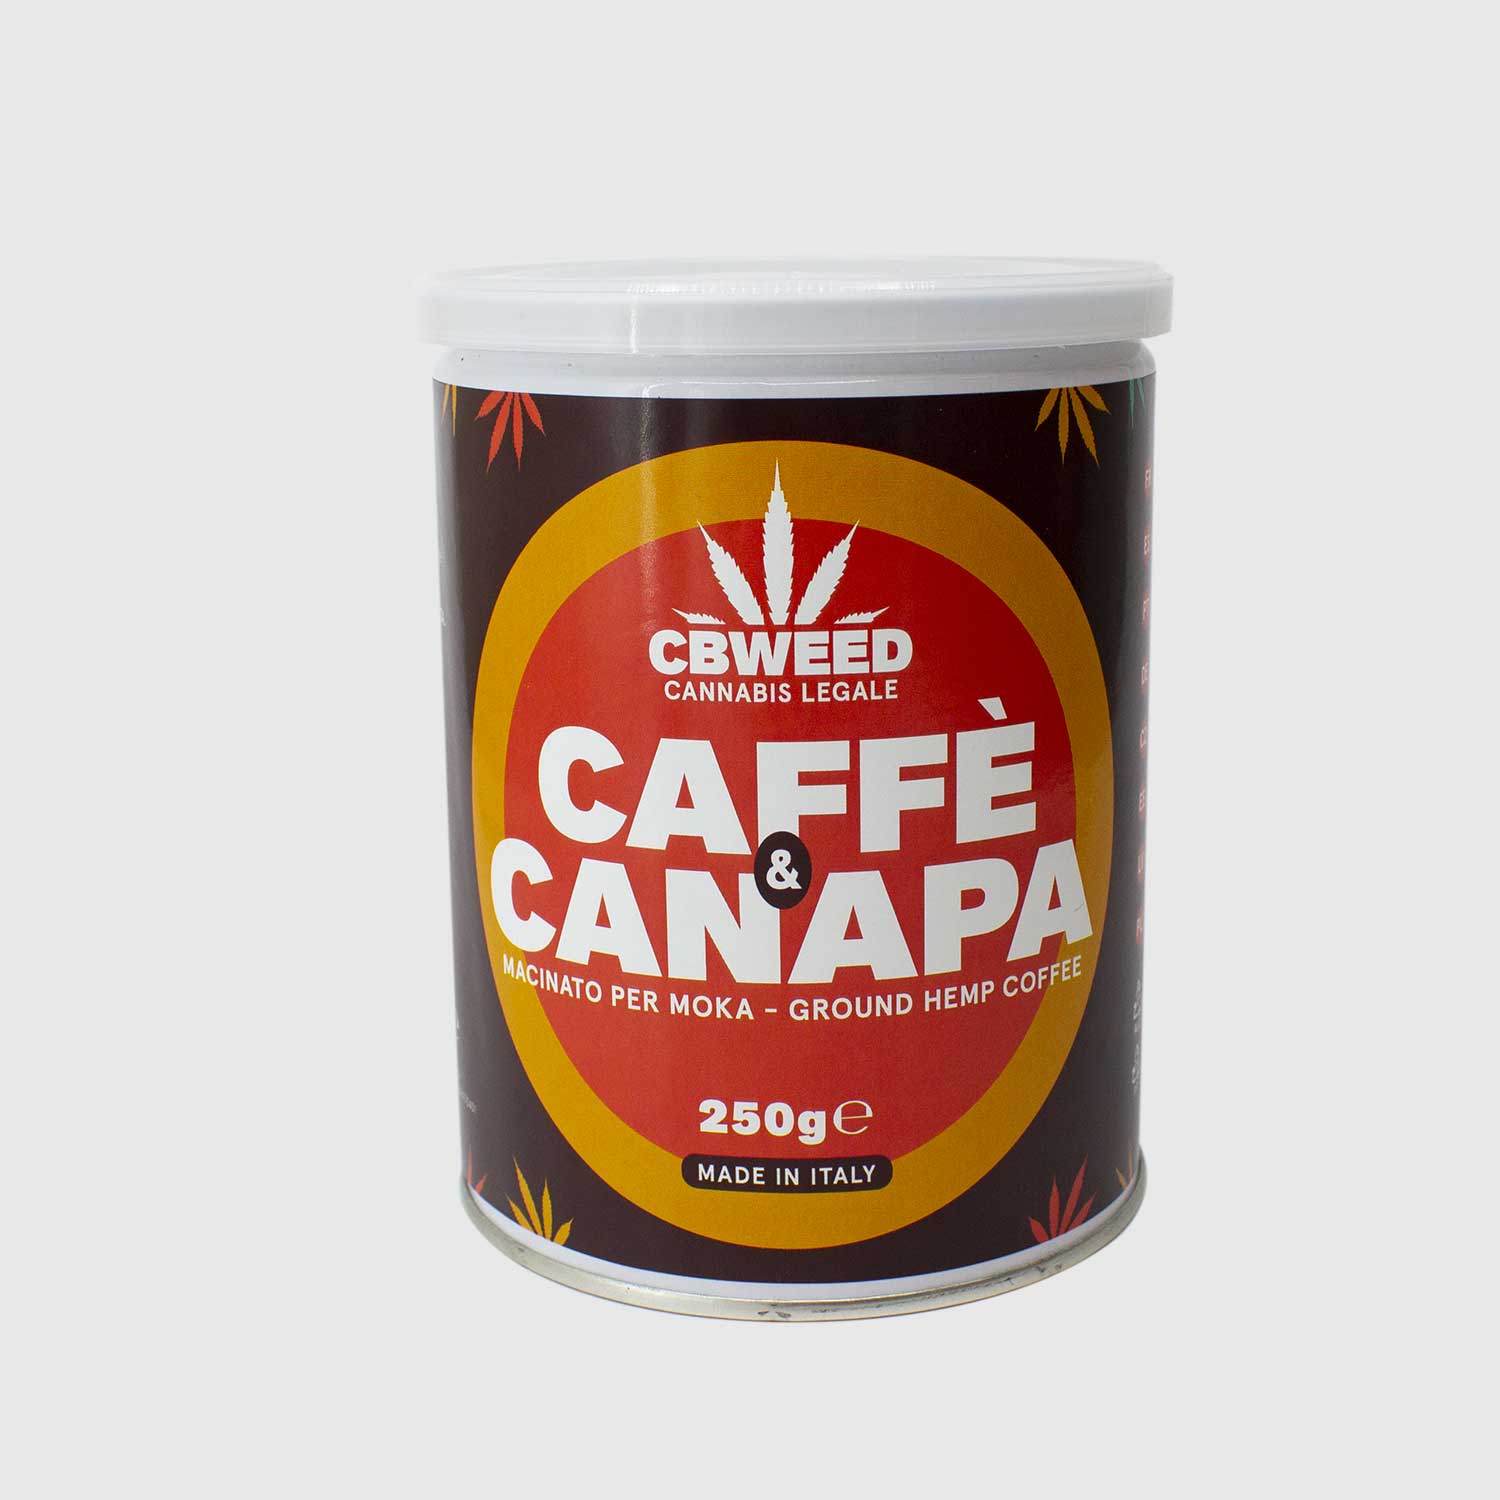 CAFFÈ ALLA CANAPA MACINATO PER MOKA